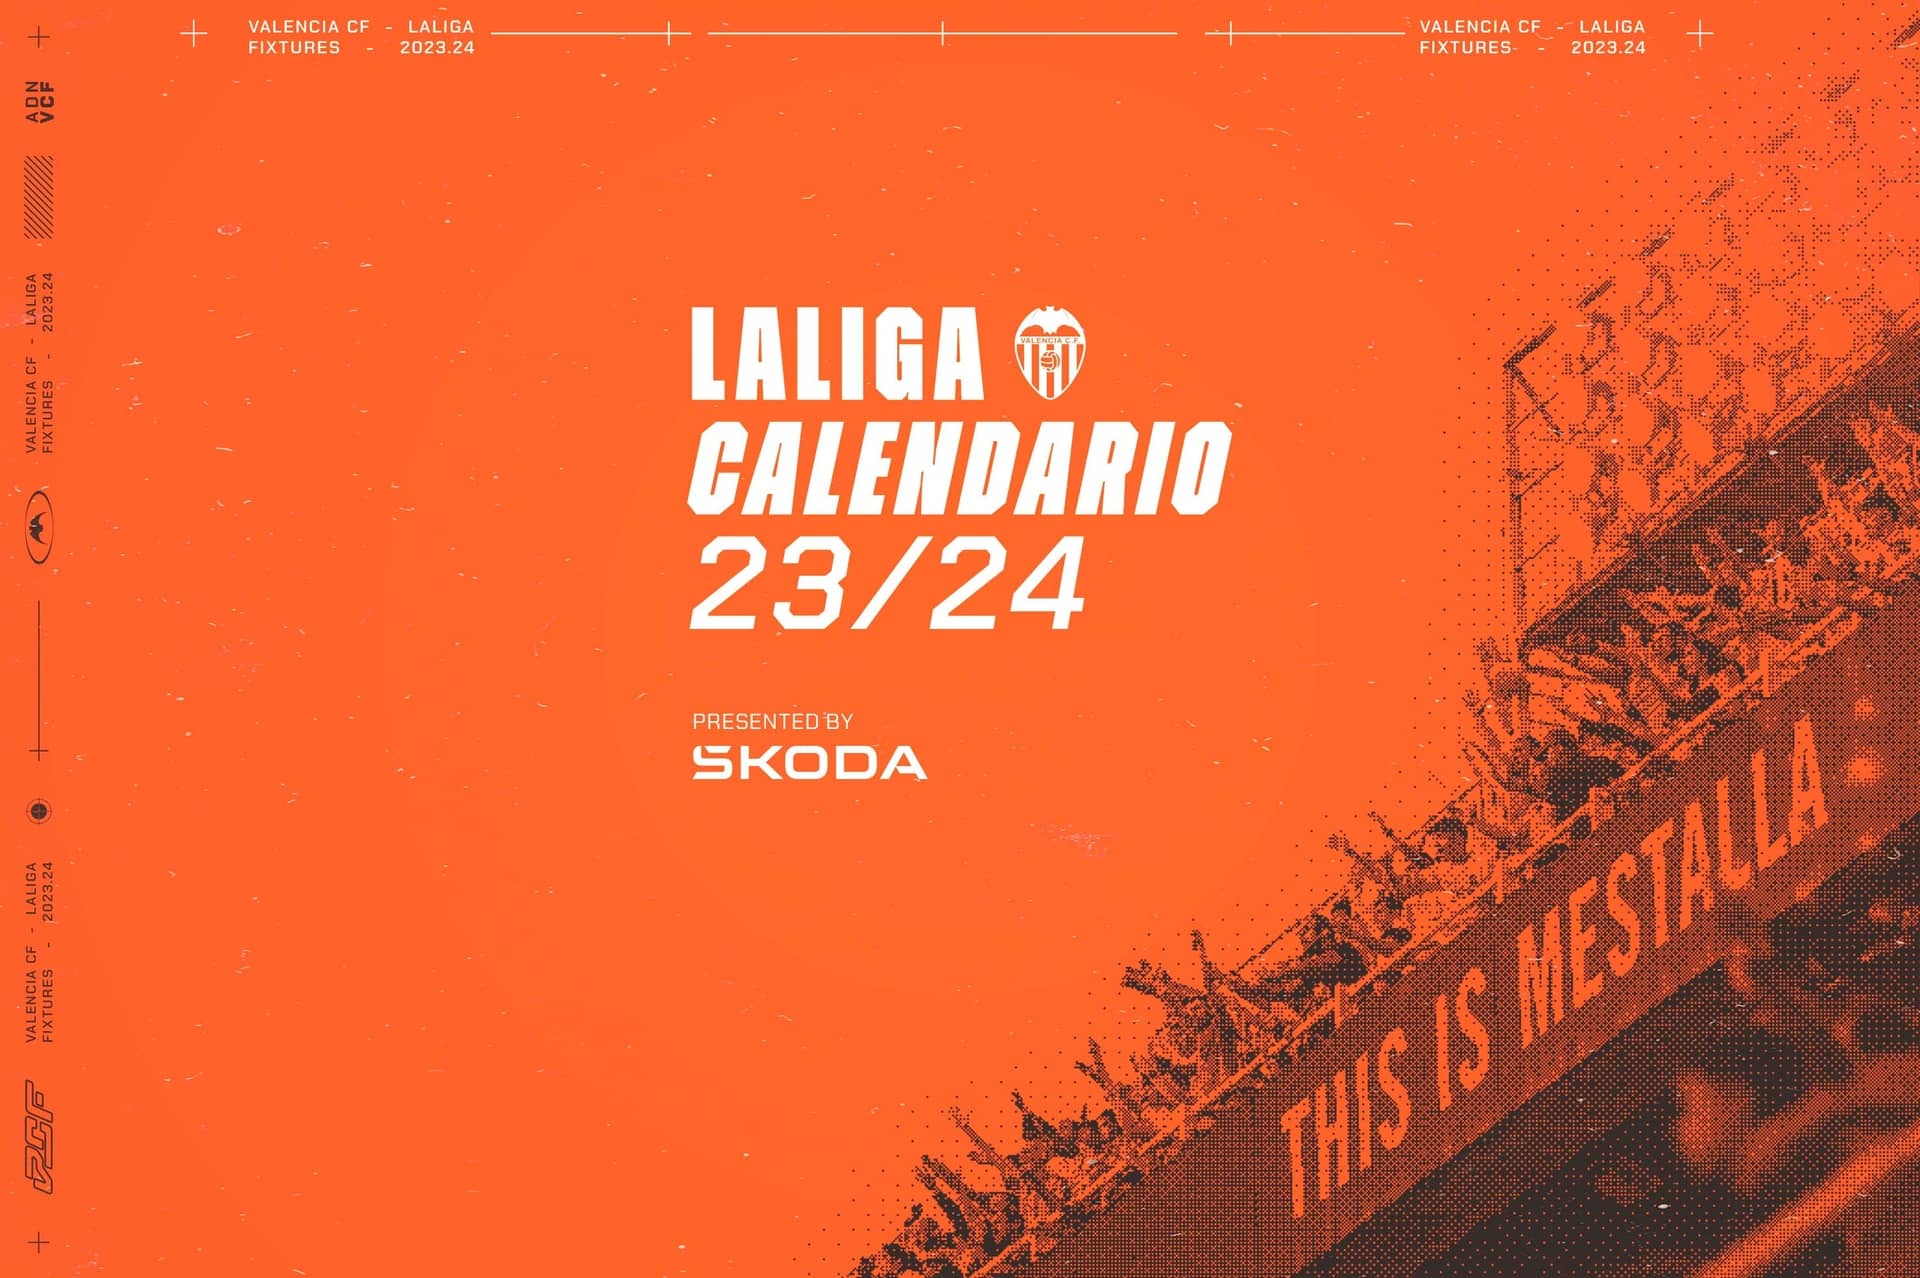 Calendario liga valencia cf